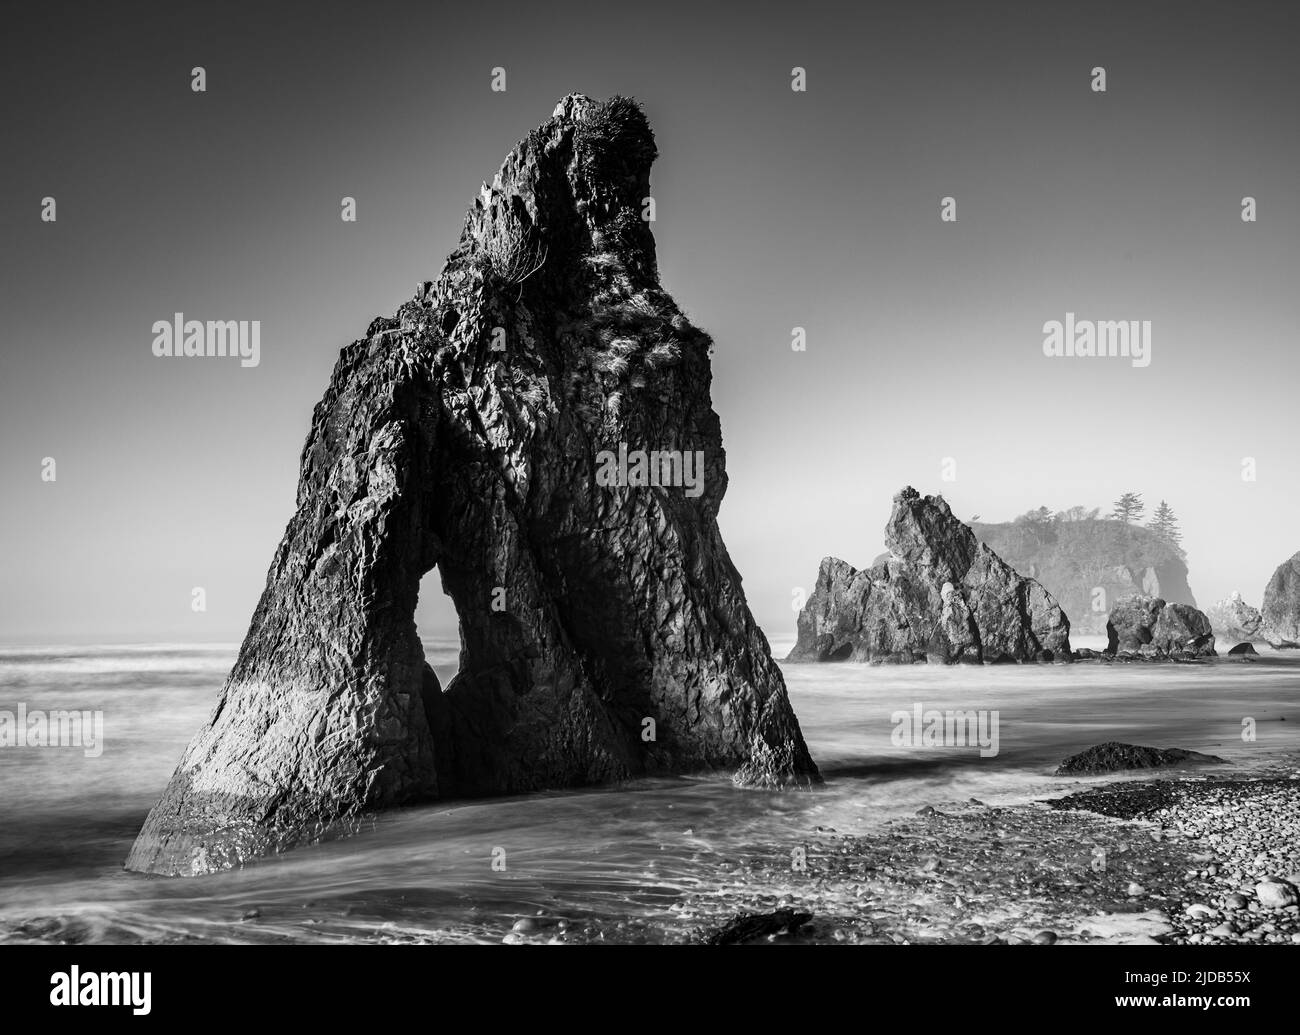 Image en noir et blanc de piles marines et de l'île Abbey à Ruby Beach dans le parc national olympique, sur la côte de Washington Banque D'Images